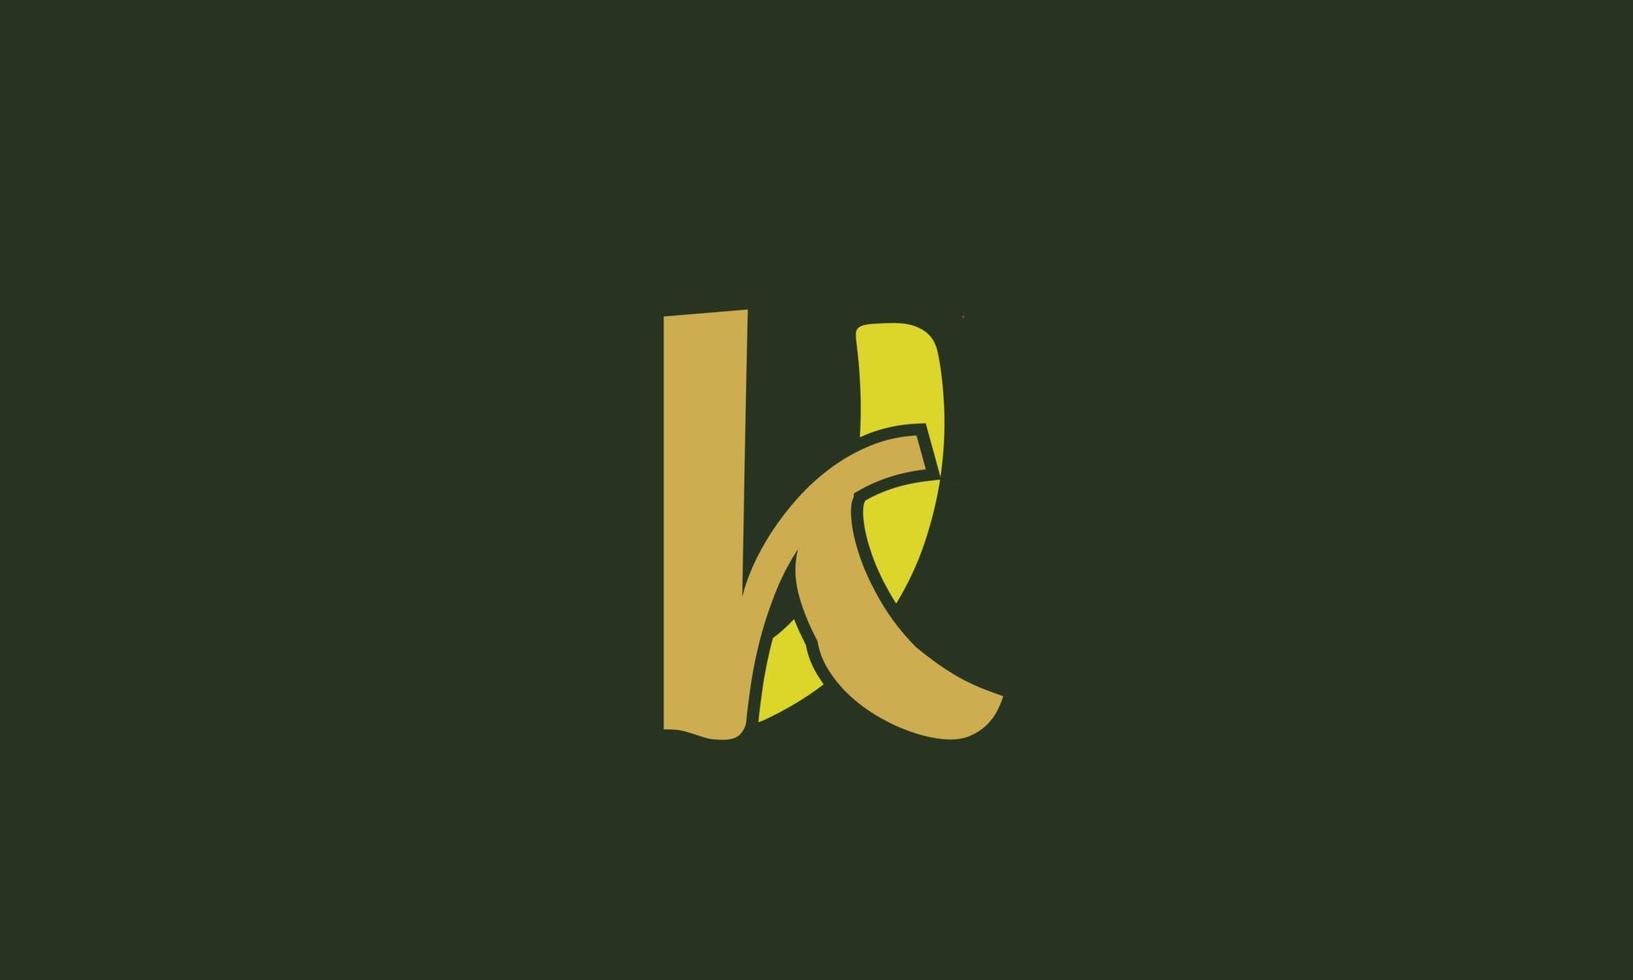 letras del alfabeto iniciales monograma logo vk, kv, v y k vector